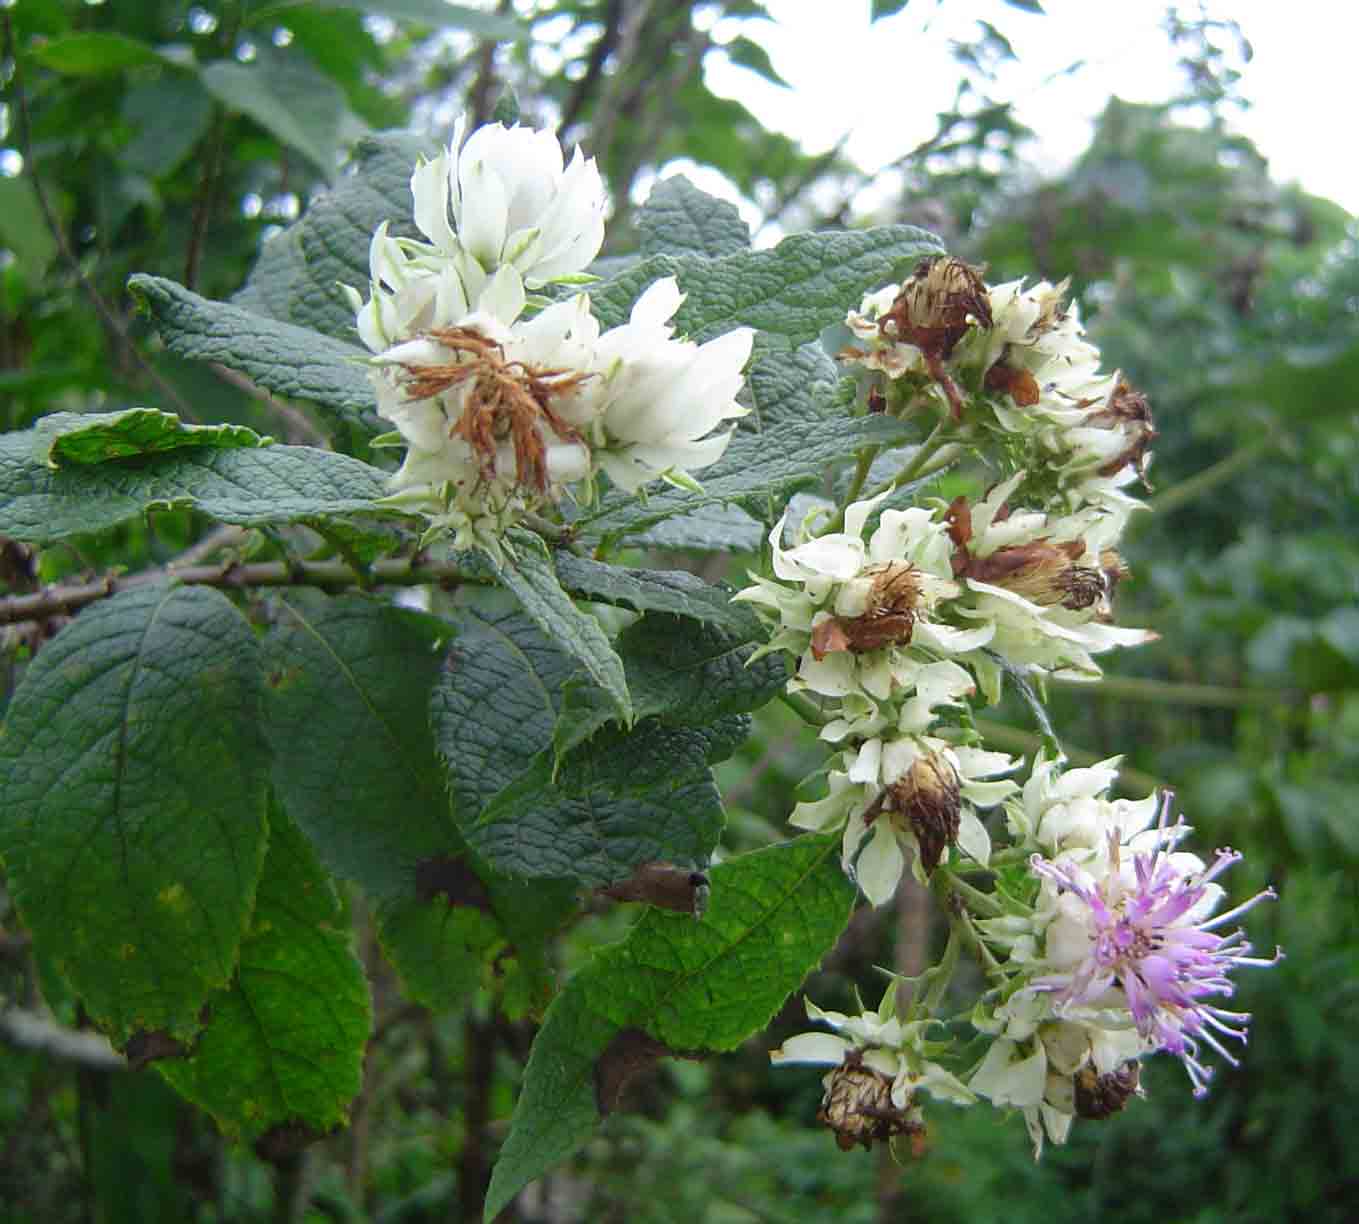 Vernonia calvoana subsp. meridionalis